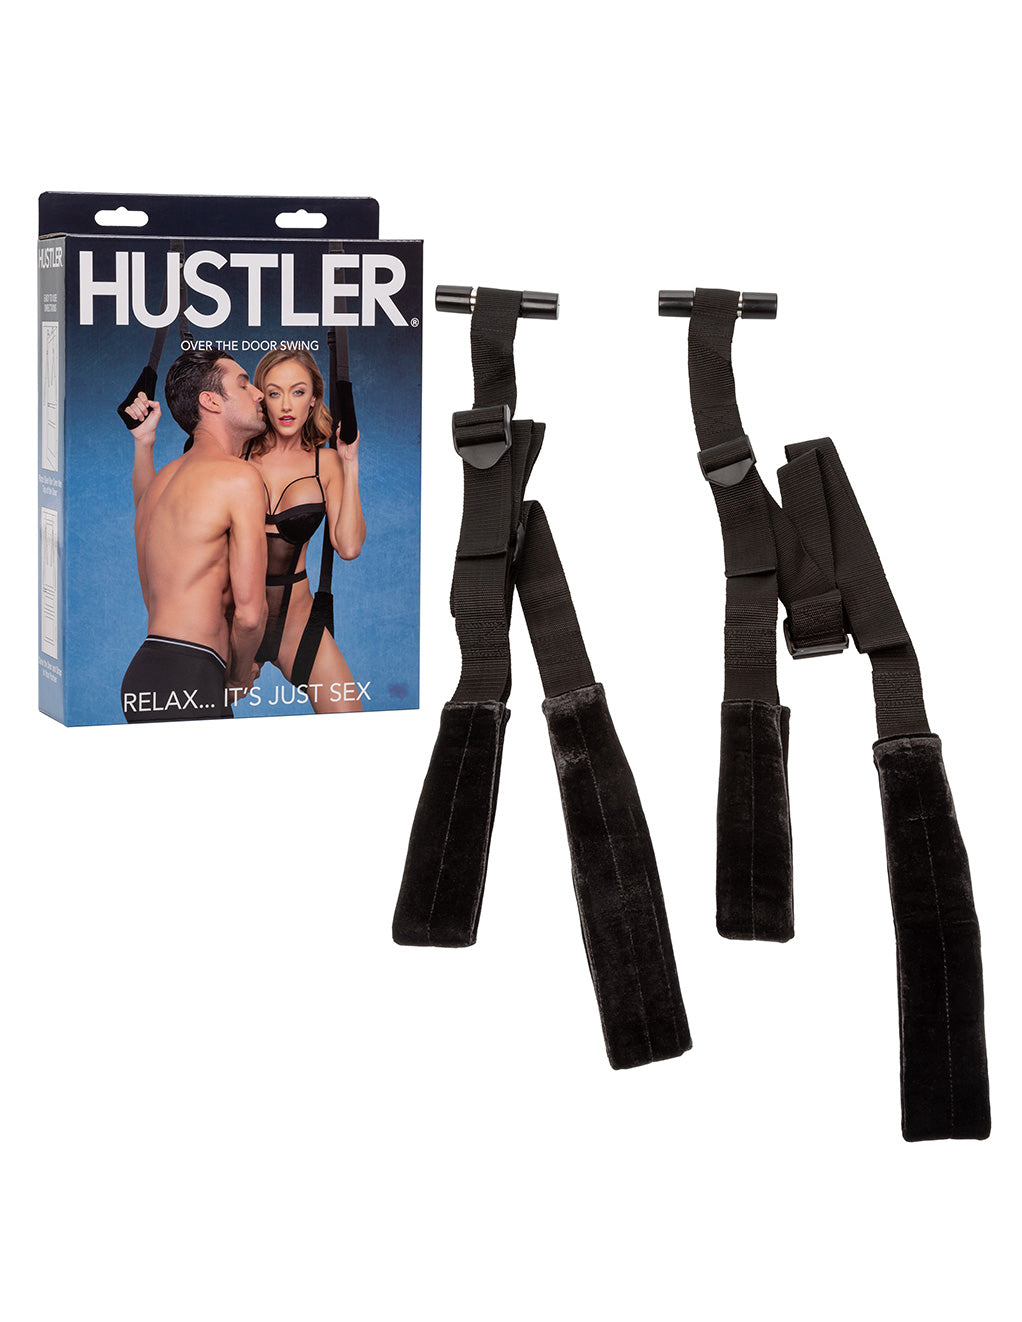 Hustler® Over The Door Swing- With box